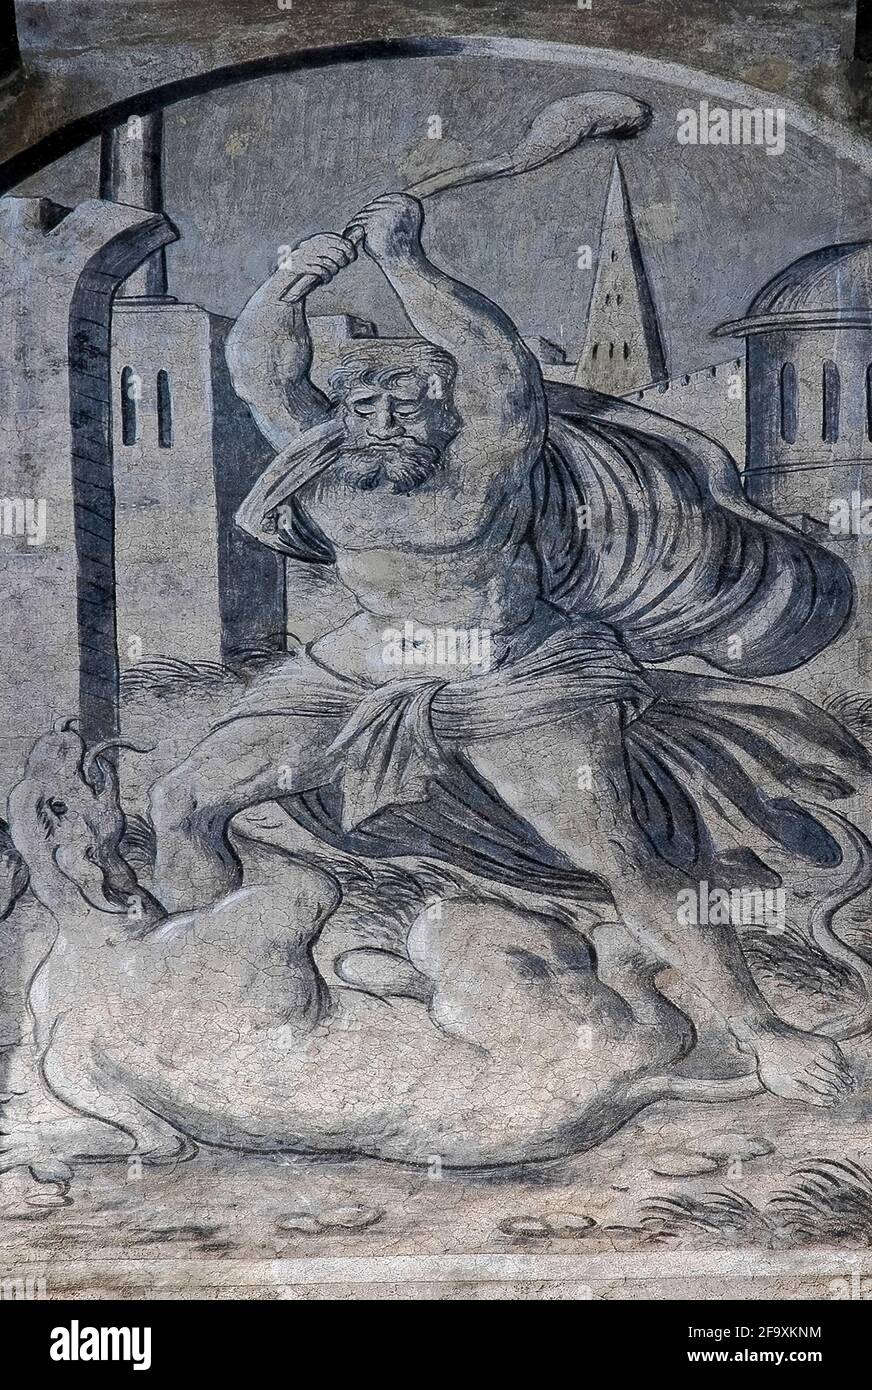 Heracles o Hércules, el gran héroe de la antigua mitología griega y romana,  se encuentra con un animal en este cuadro de 1571 de chiaroscuro en la  fachada renacentista del Ayuntamiento Antiguo